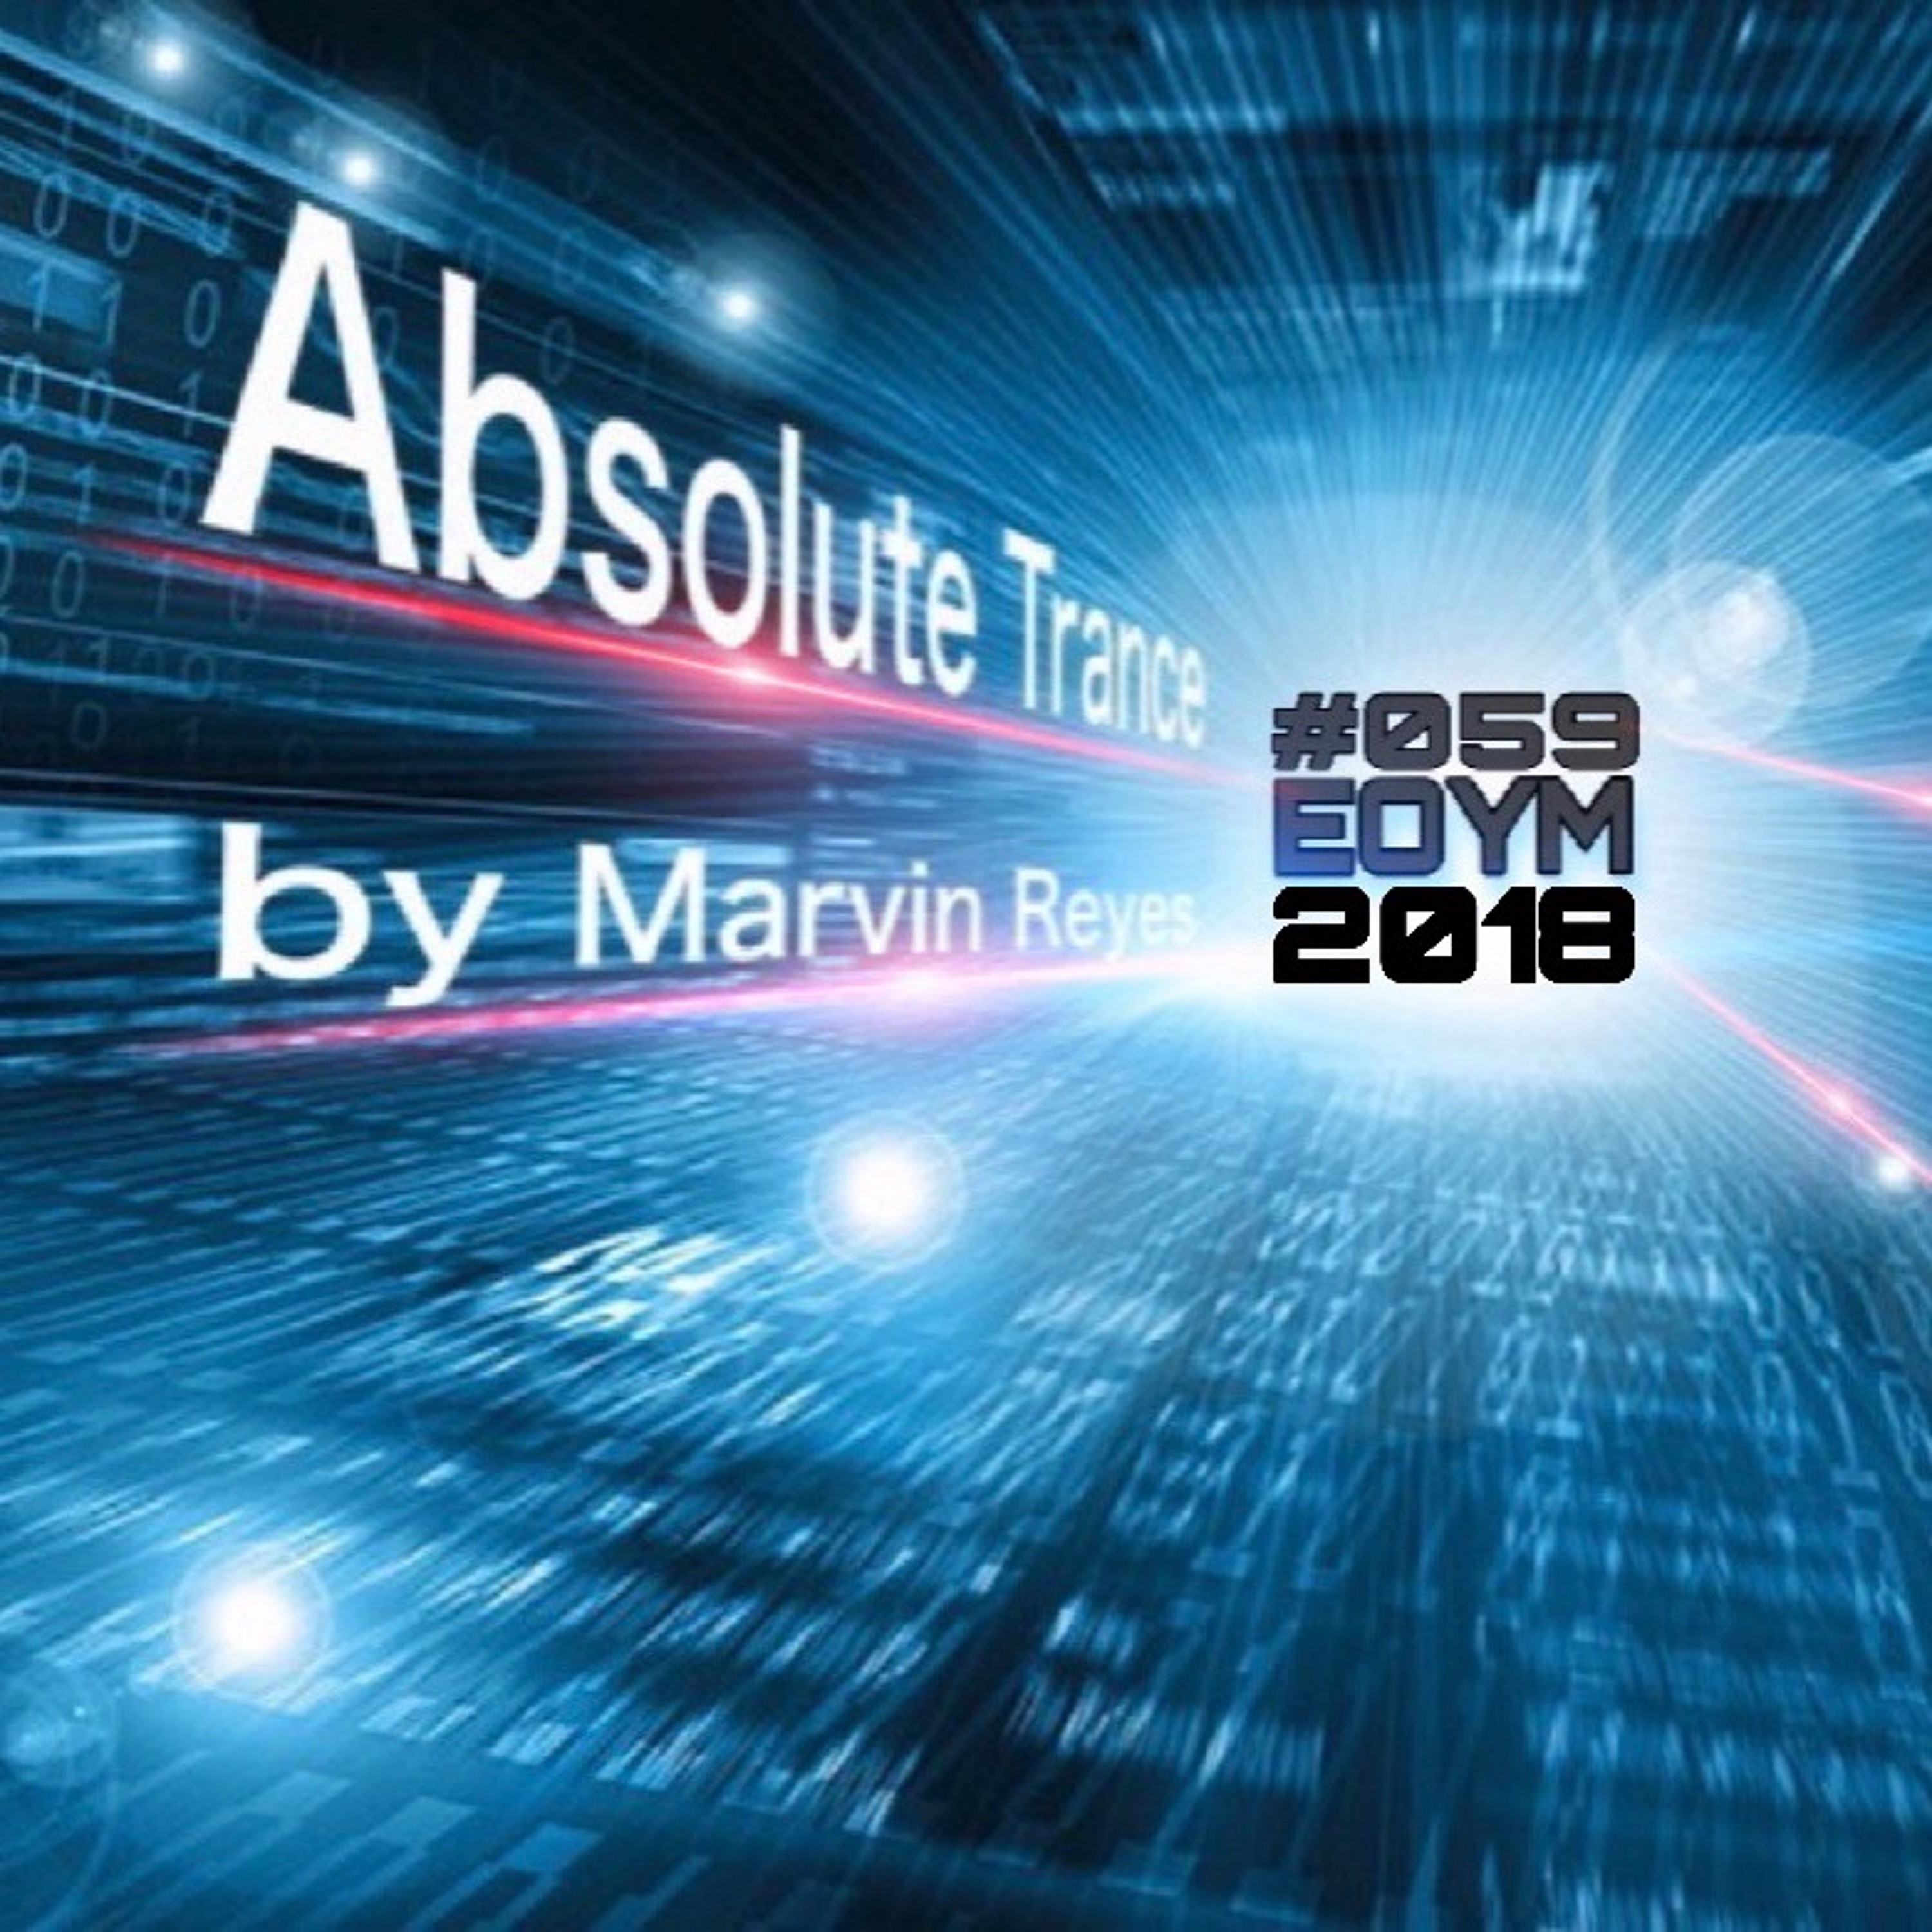 Absolute Trance #059 (EOYM)2018